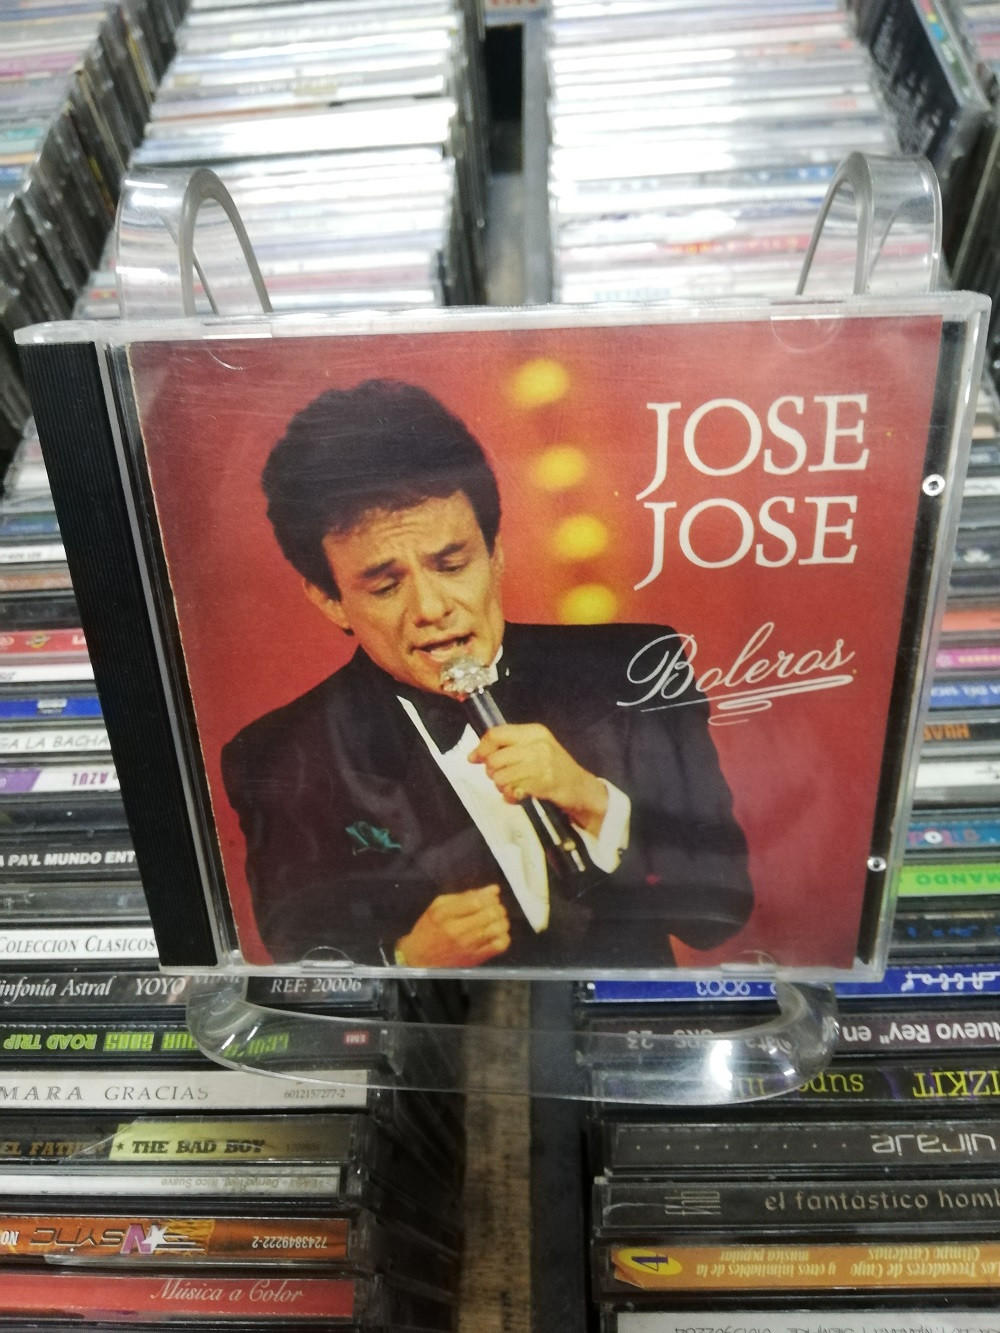 Imagen CD JOSÉ JOSÉ - BOLEROS